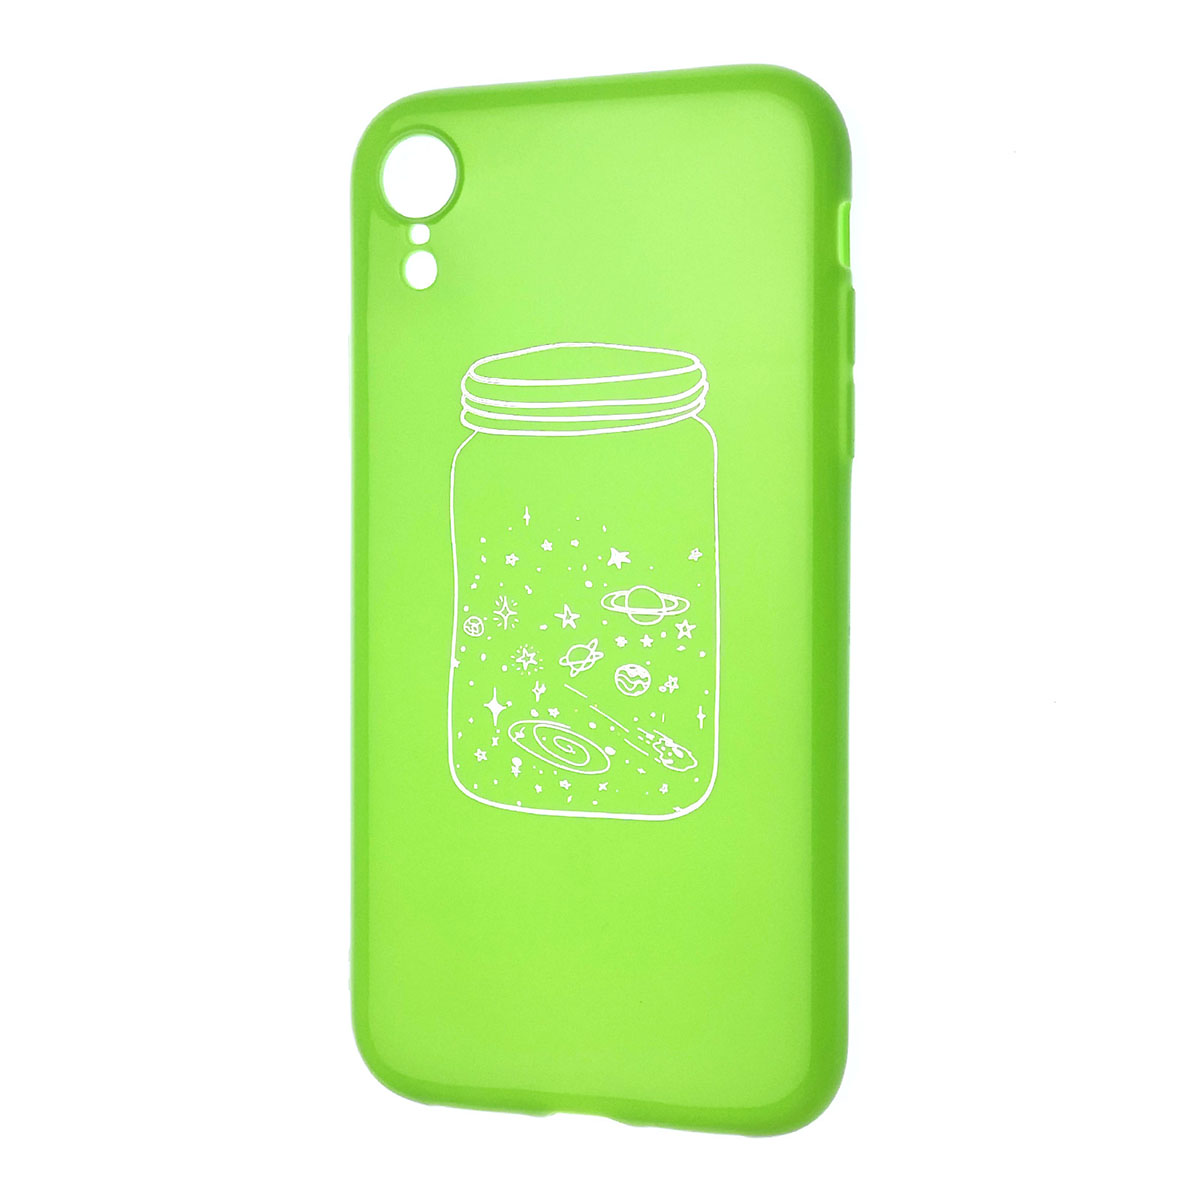 Чехол накладка для APPLE iPhone XR, силикон, глянцевый, рисунок Банка галактика, цвет зеленый.